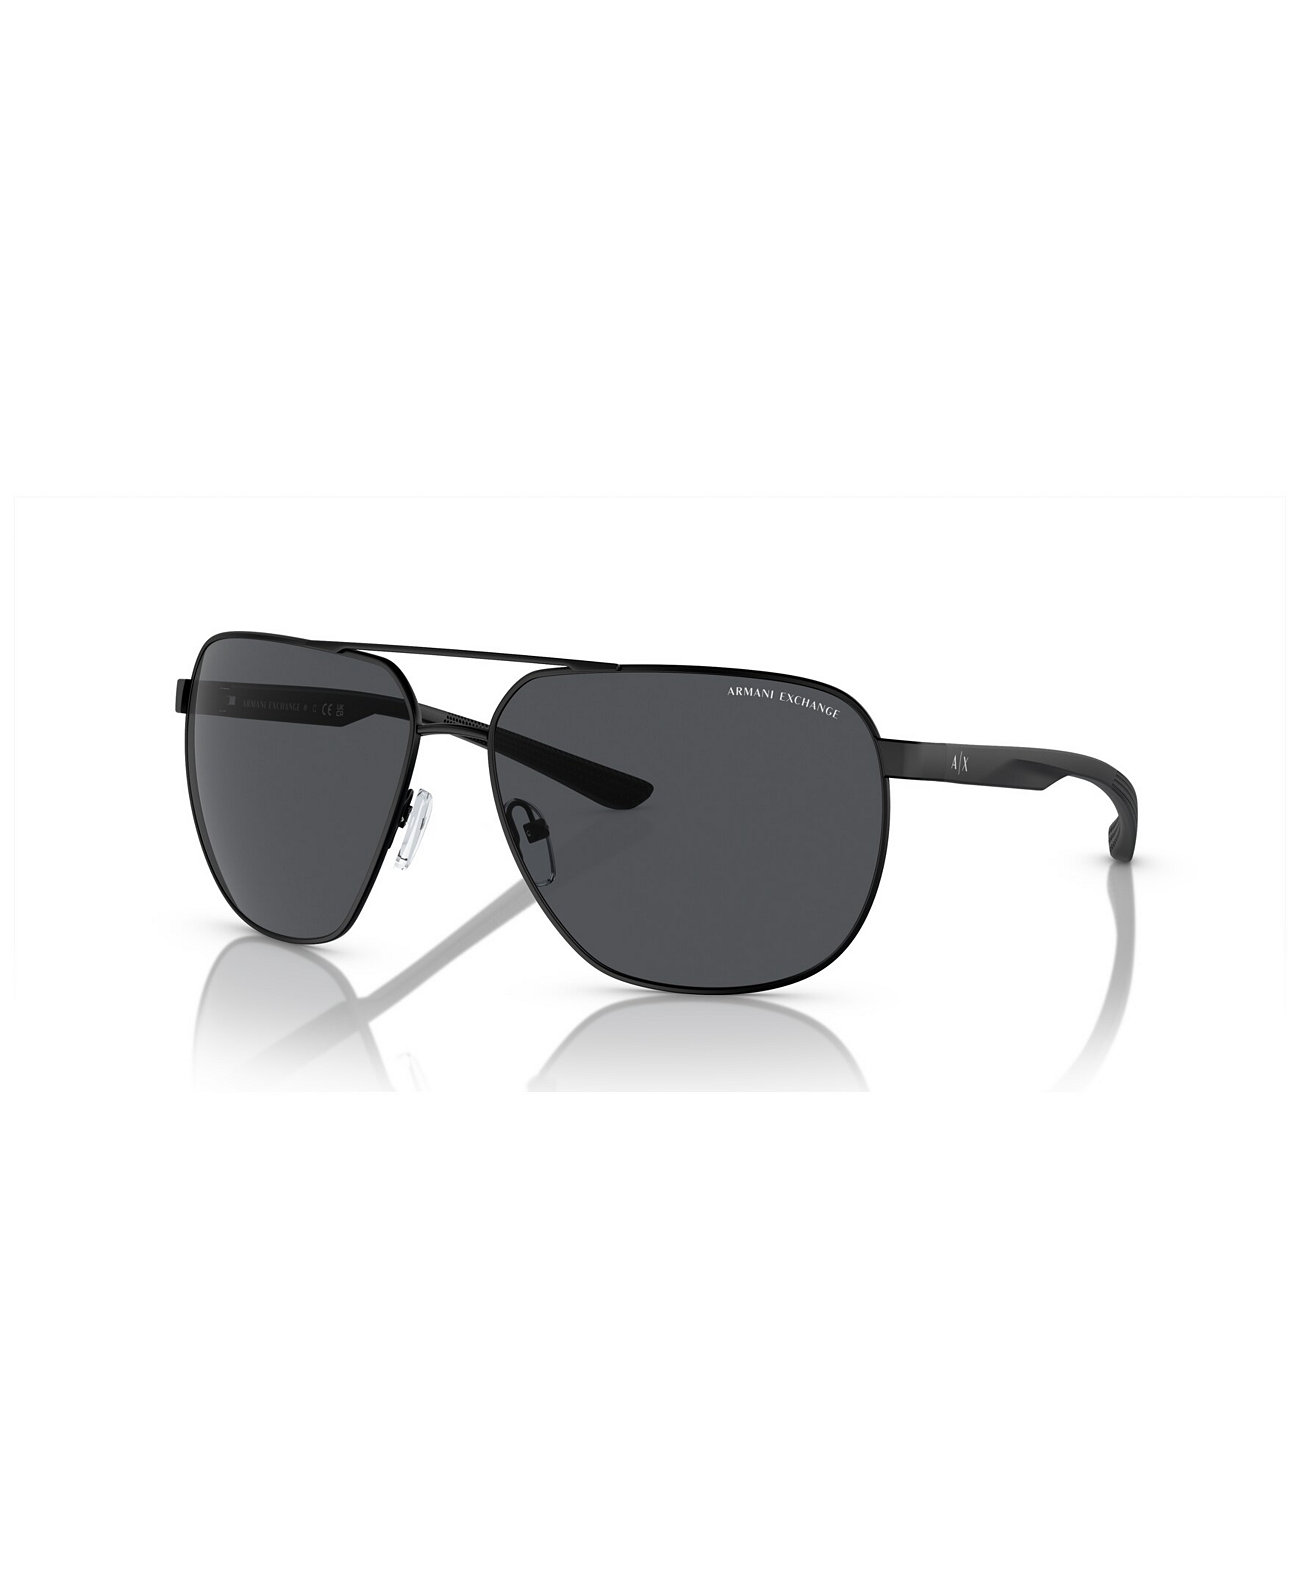 Men's Sunglasses AX2047S Armani